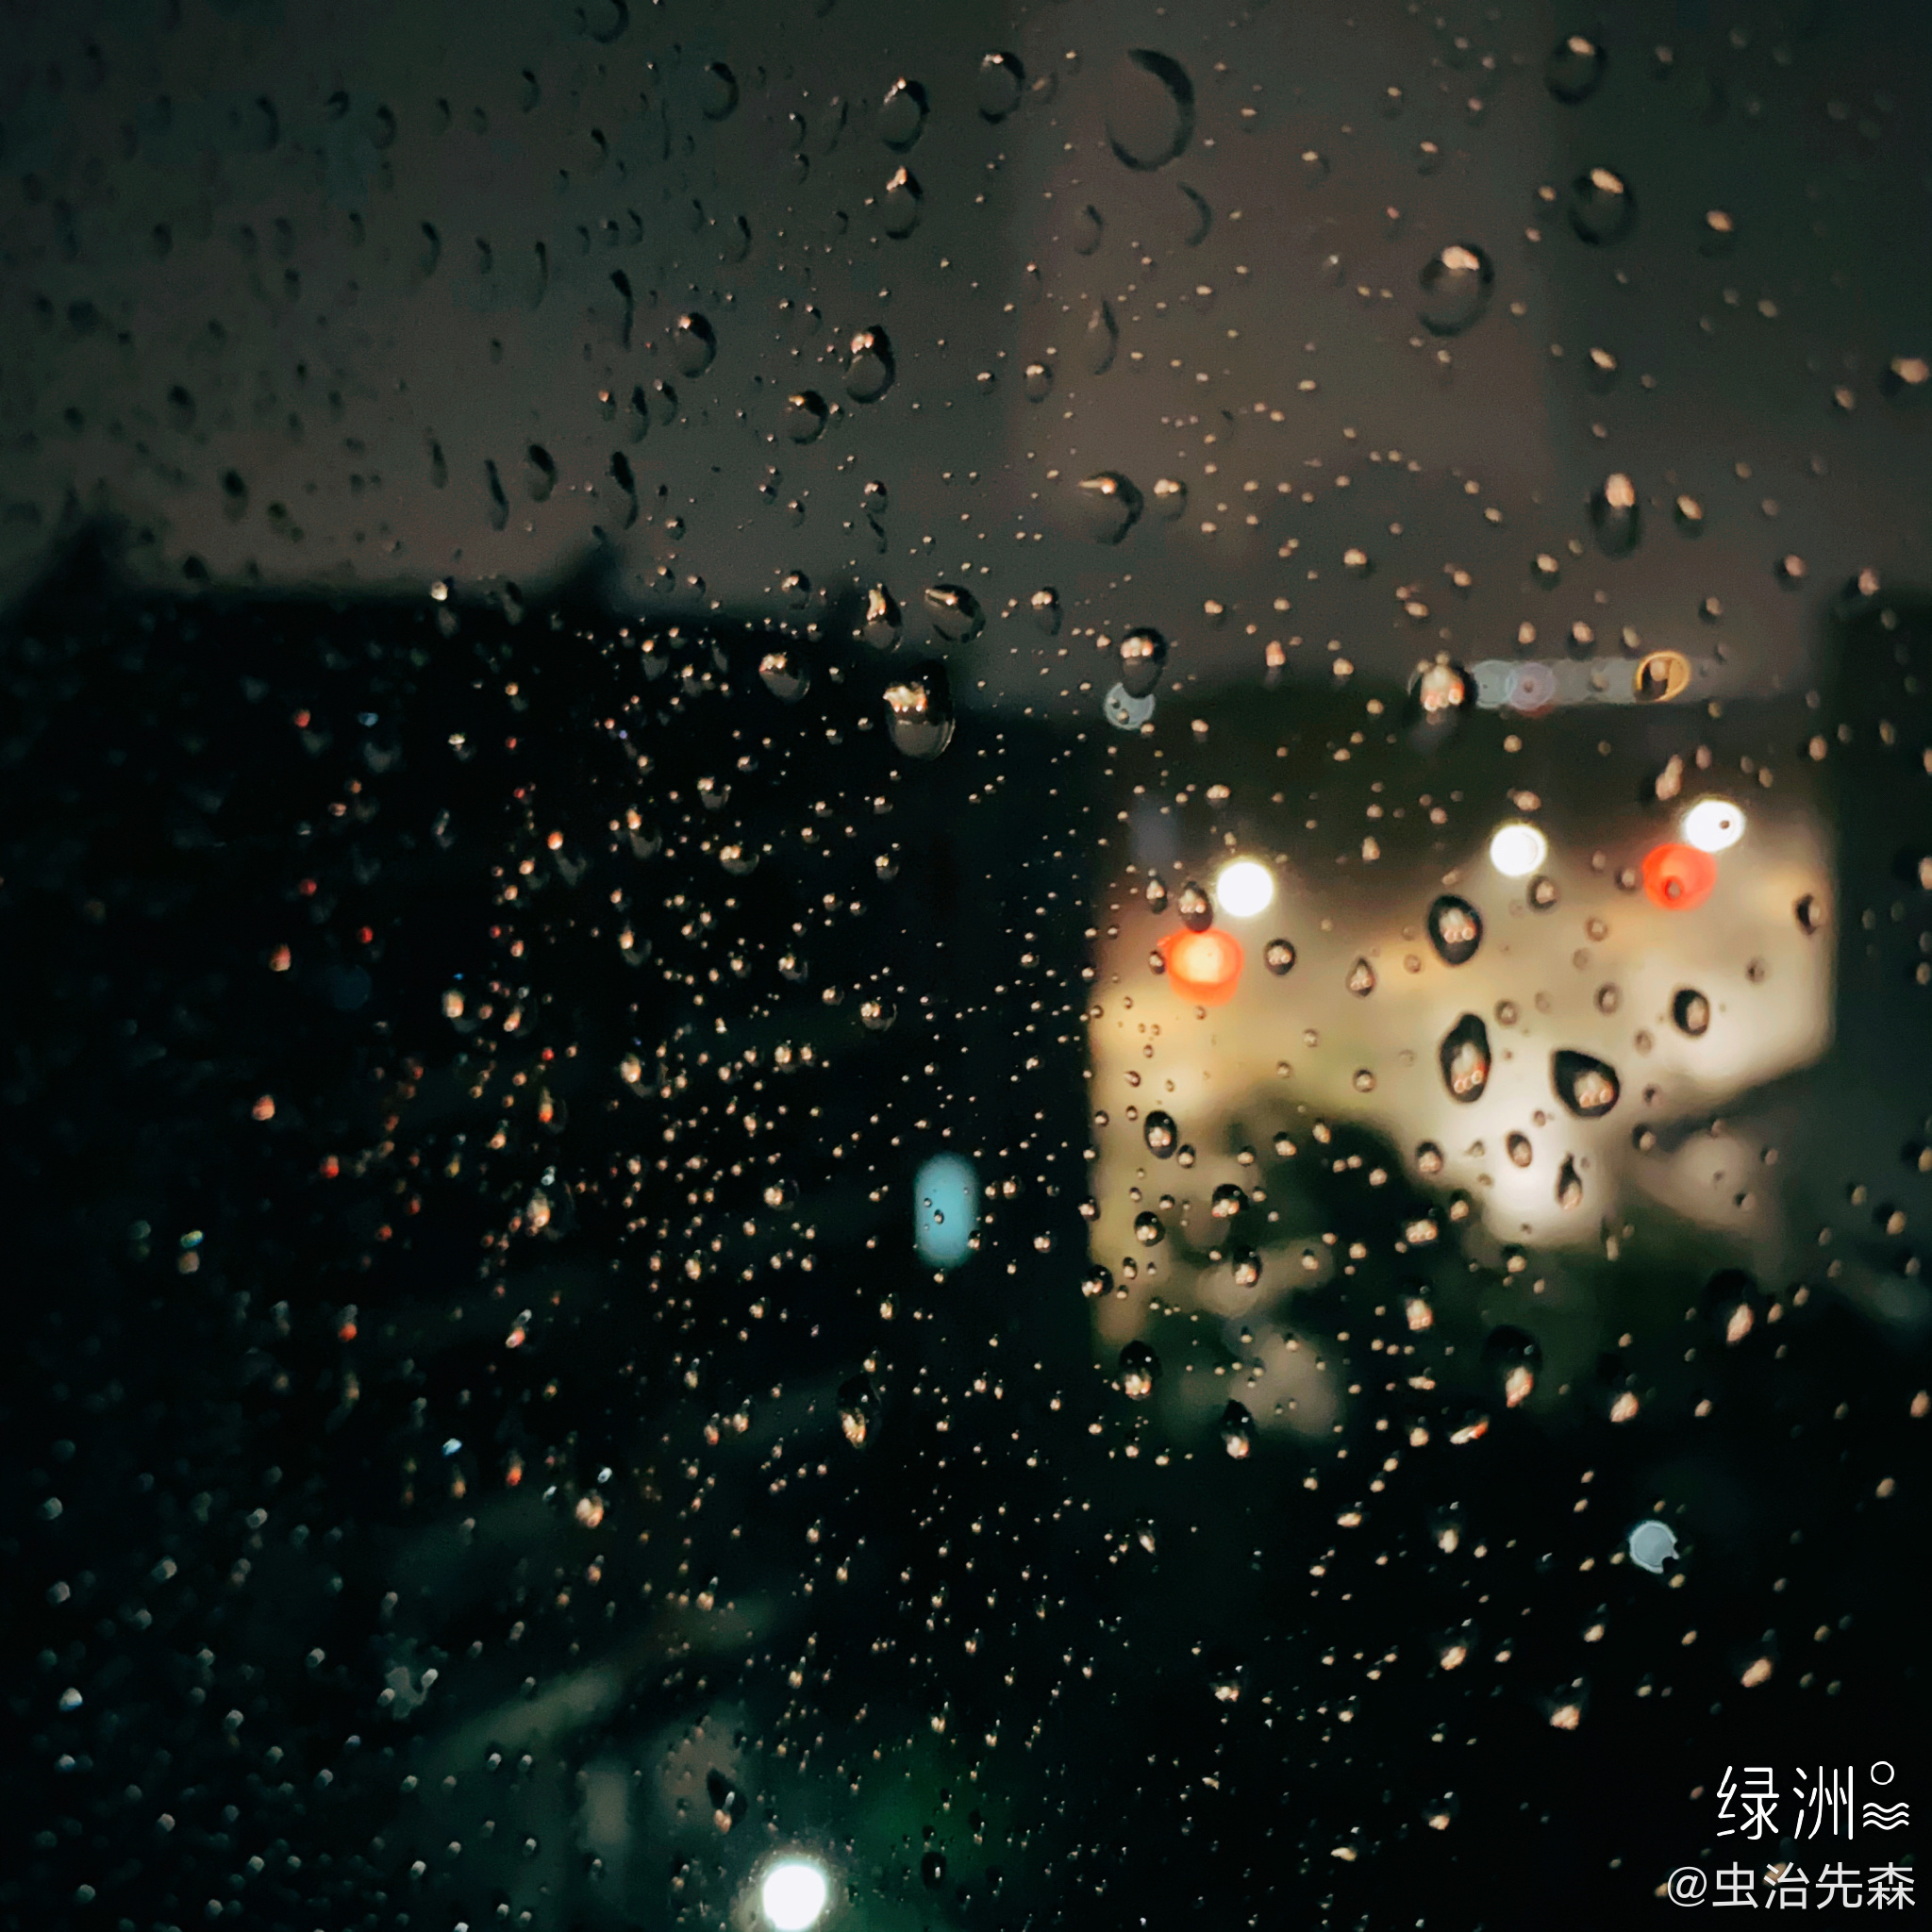 窗外的雨滴 一滴滴累计